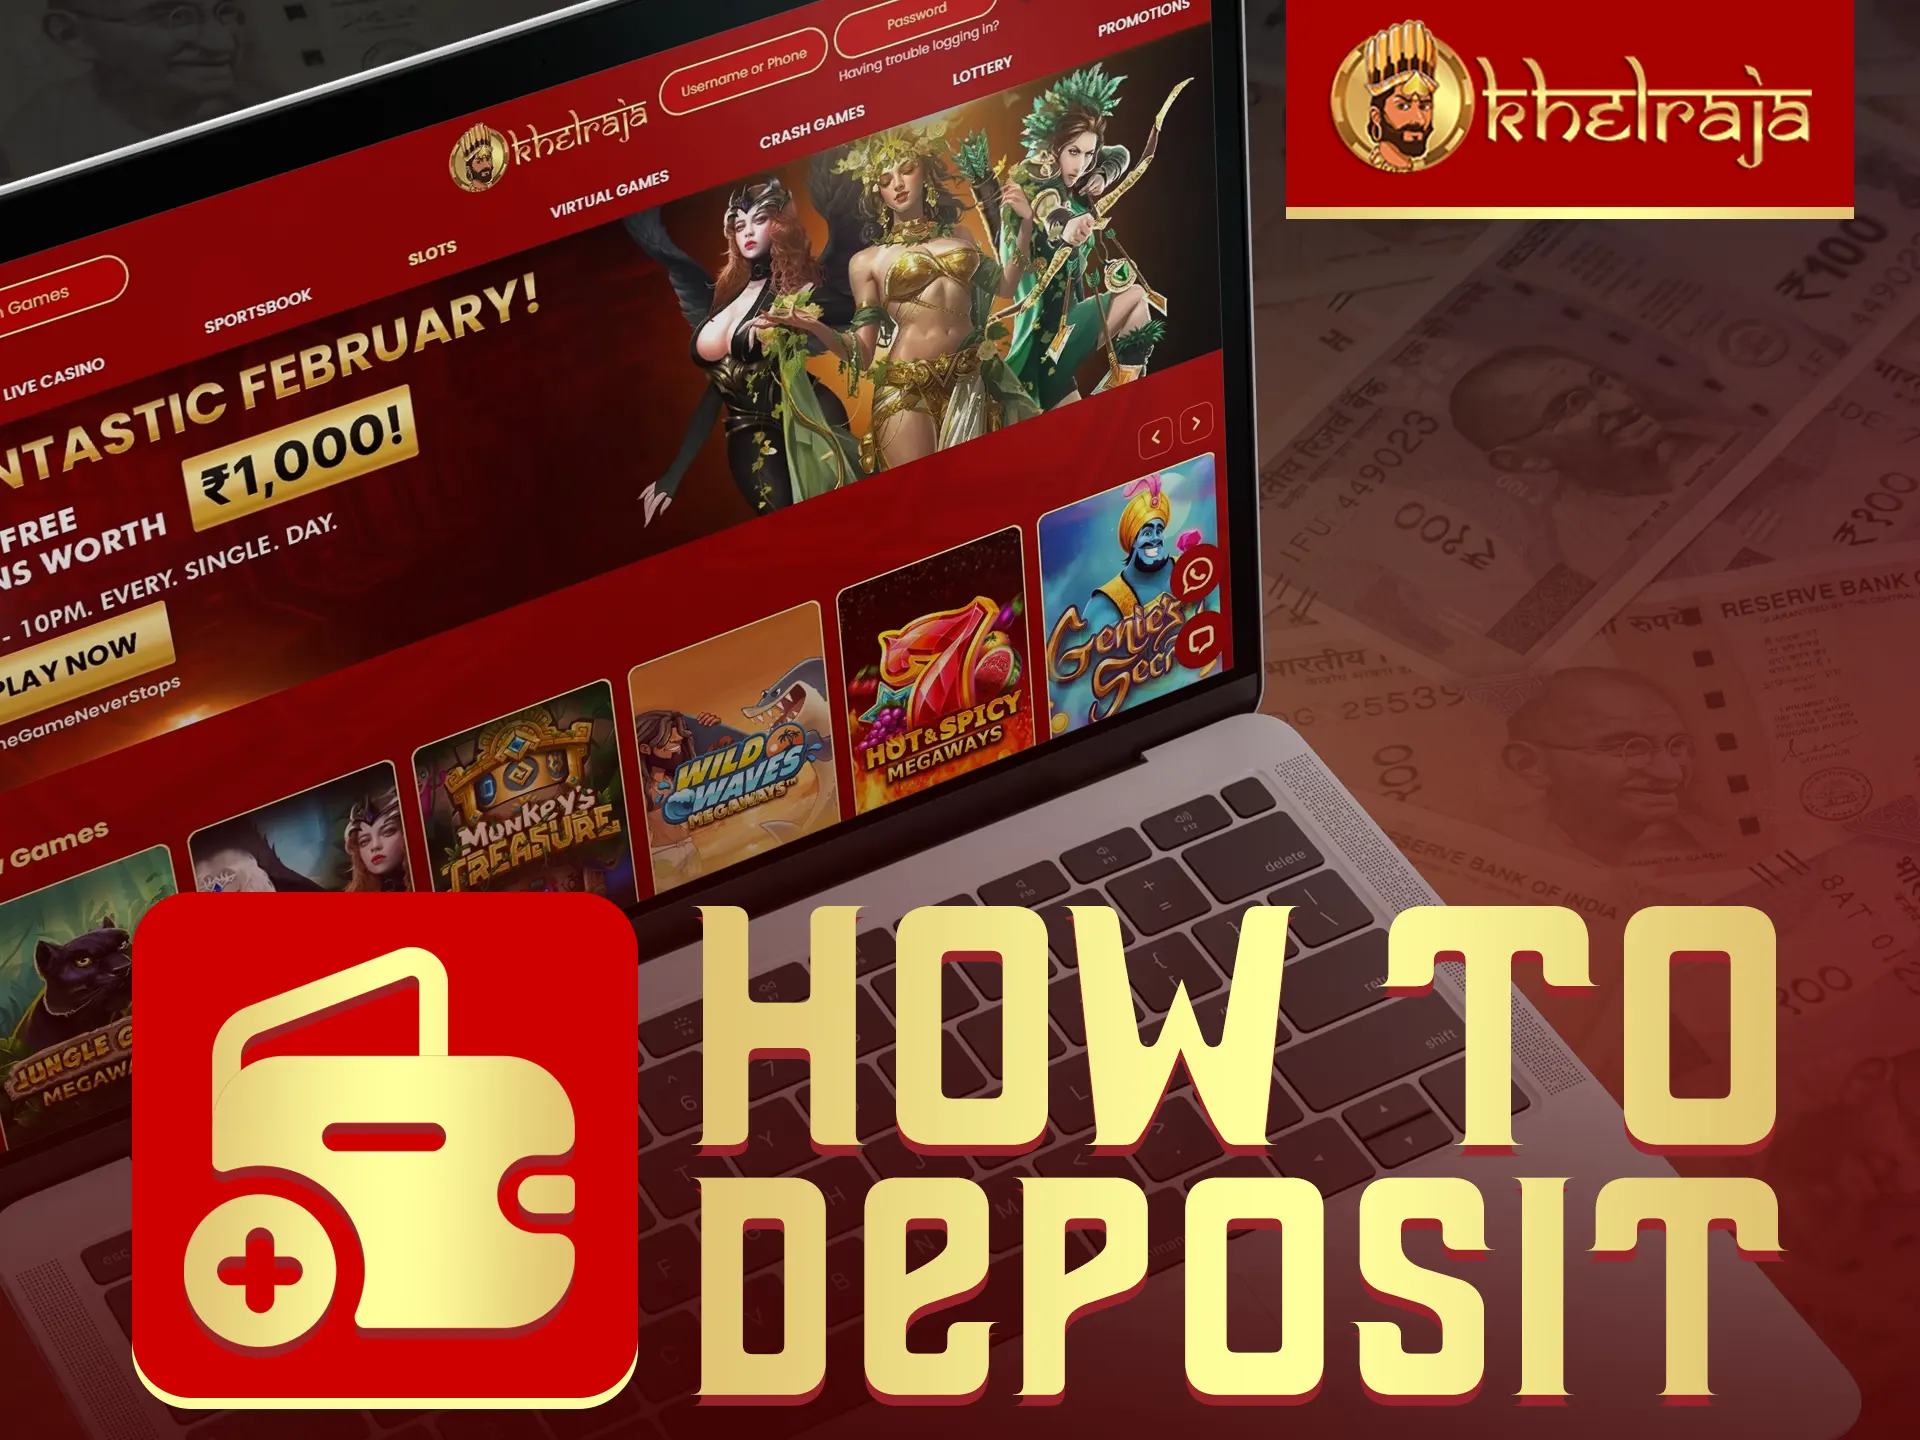 Deposit easily at Khelraja.